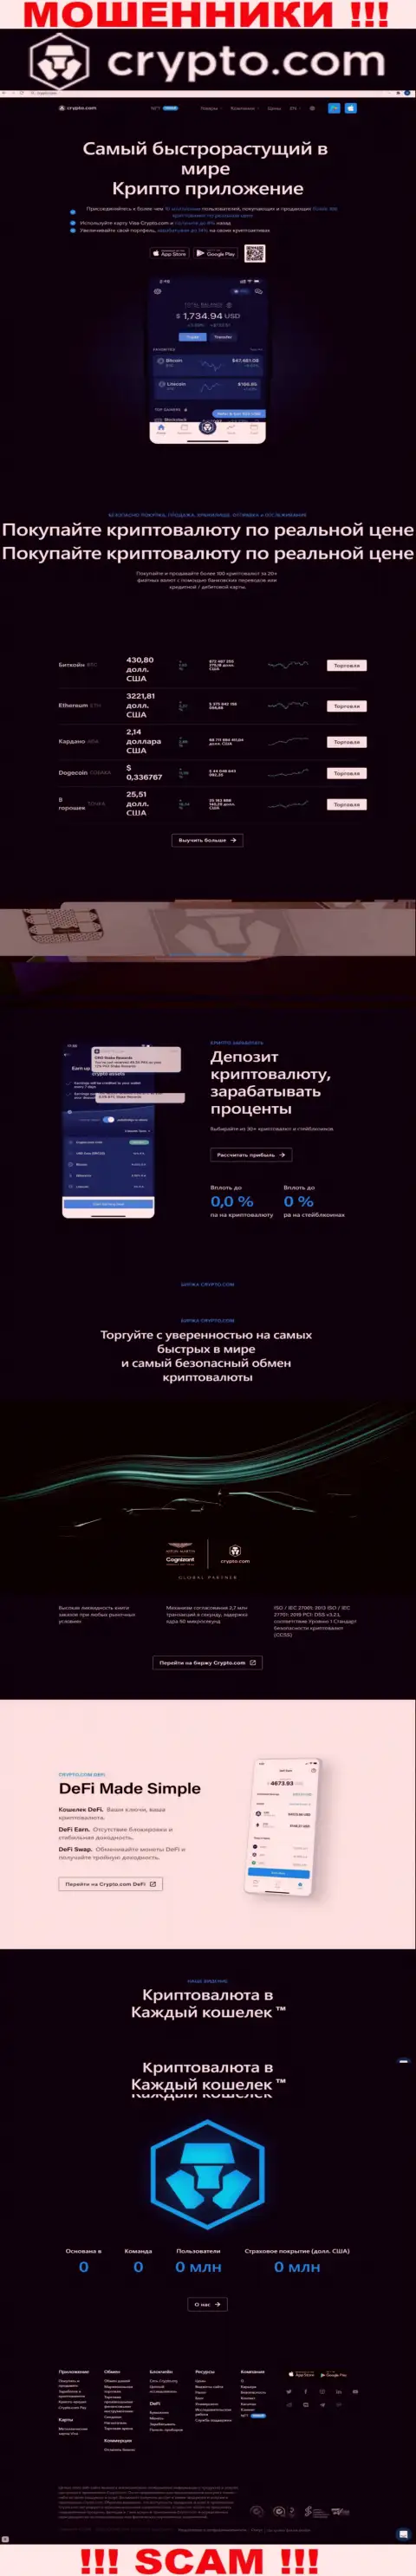 Официальный сайт кидал КриптоКом, заполненный инфой для лохов